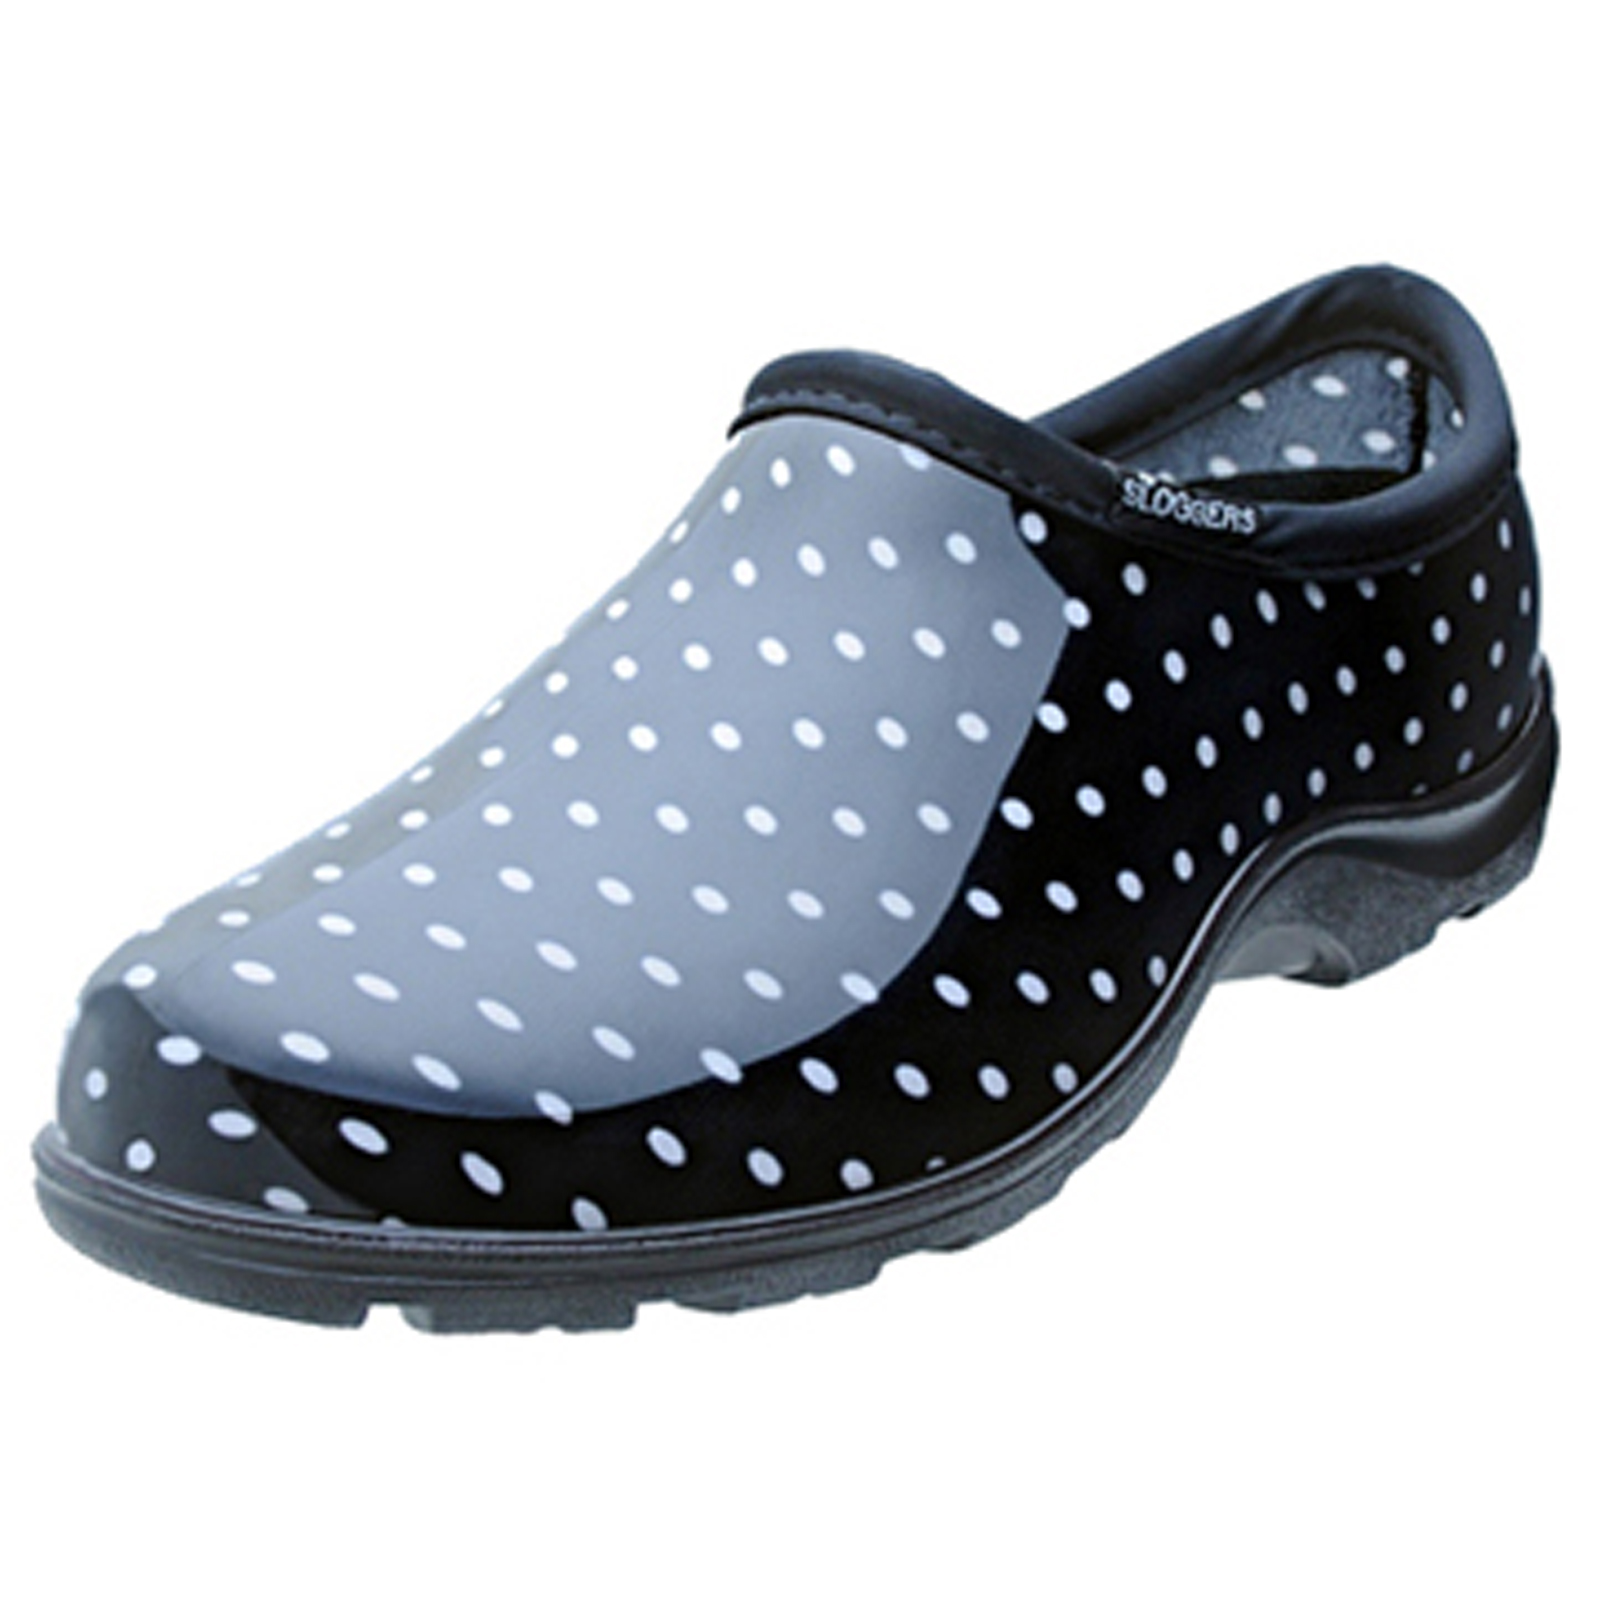 Principle Plastics PPL5113BP10 Sloggers Black & White Polka Dot Shoes, Women&#8217;s Size 10